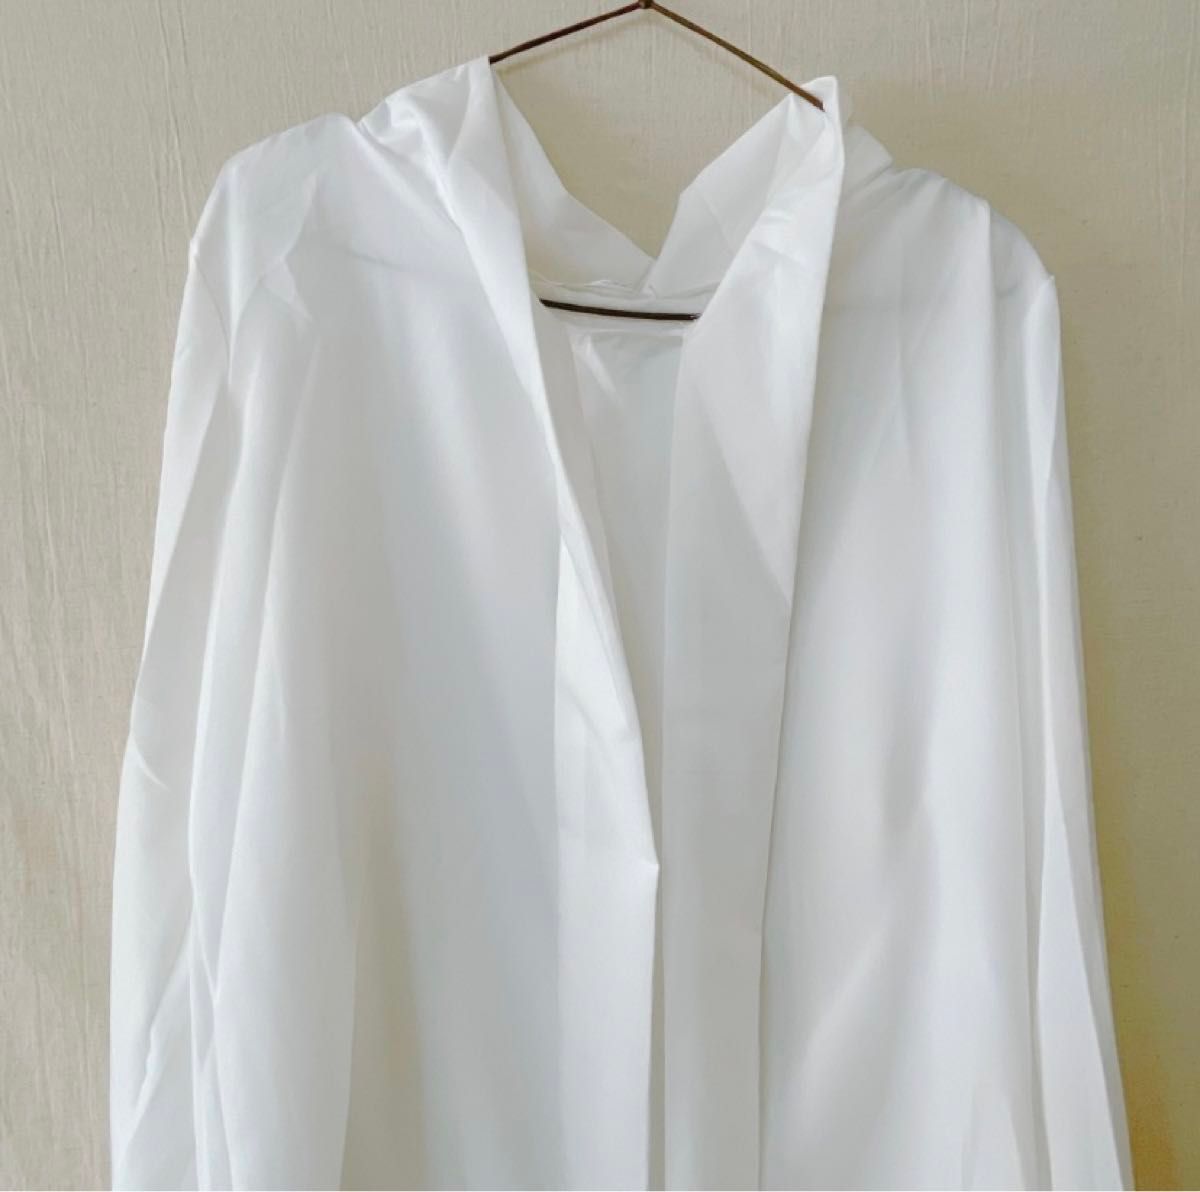 リボンシアーシャツ XLサイズ ホワイト リボン ブラウス シャツ 長袖 ボウダイブラウス シフォン 透け感 入学式 オフィス